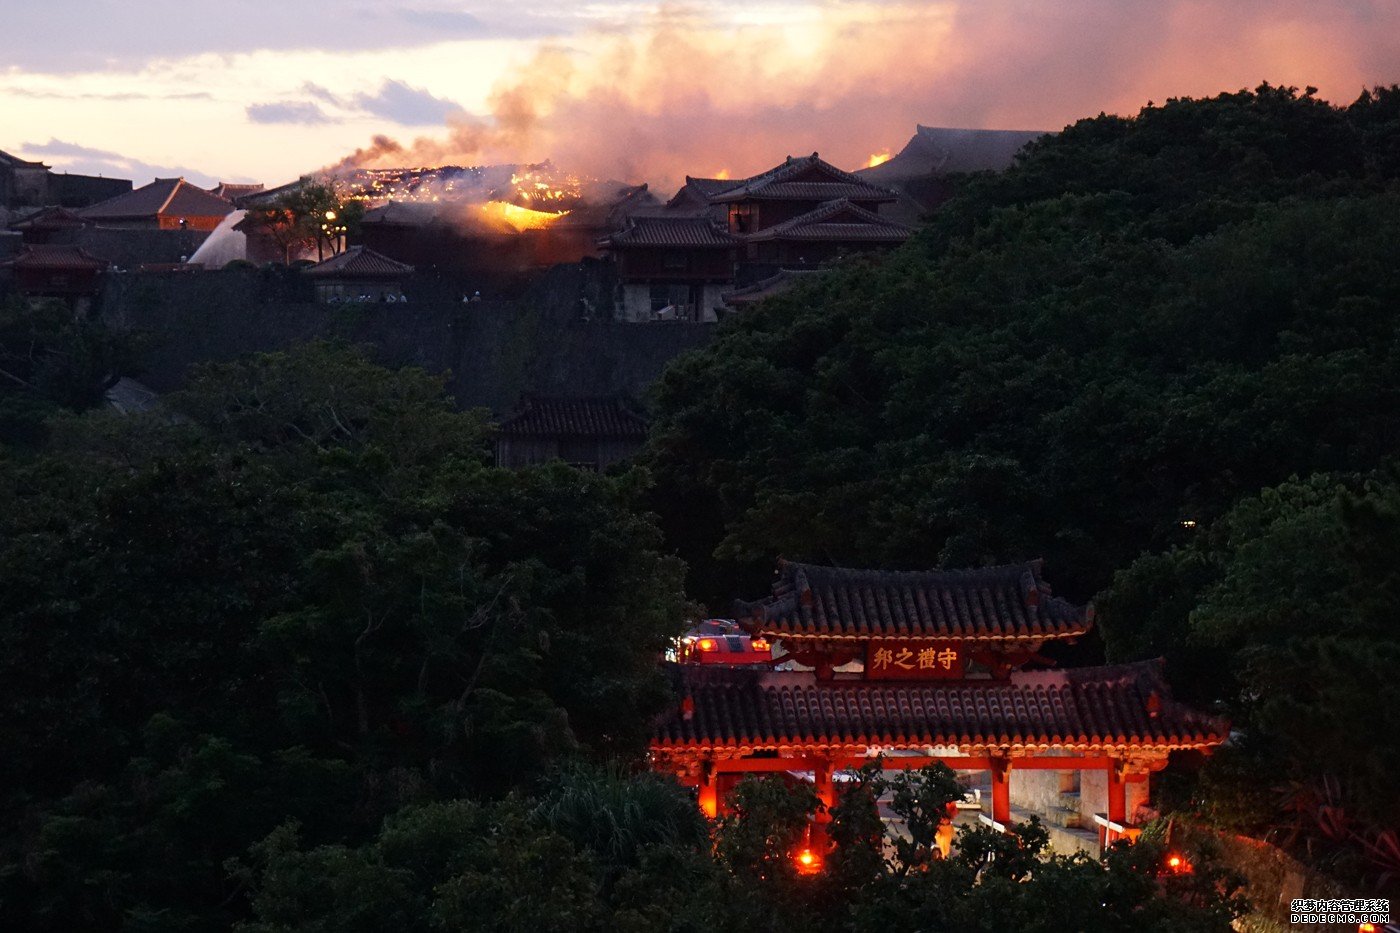 日本神圣的世界文化遗产Shuri城堡在大火中被毁